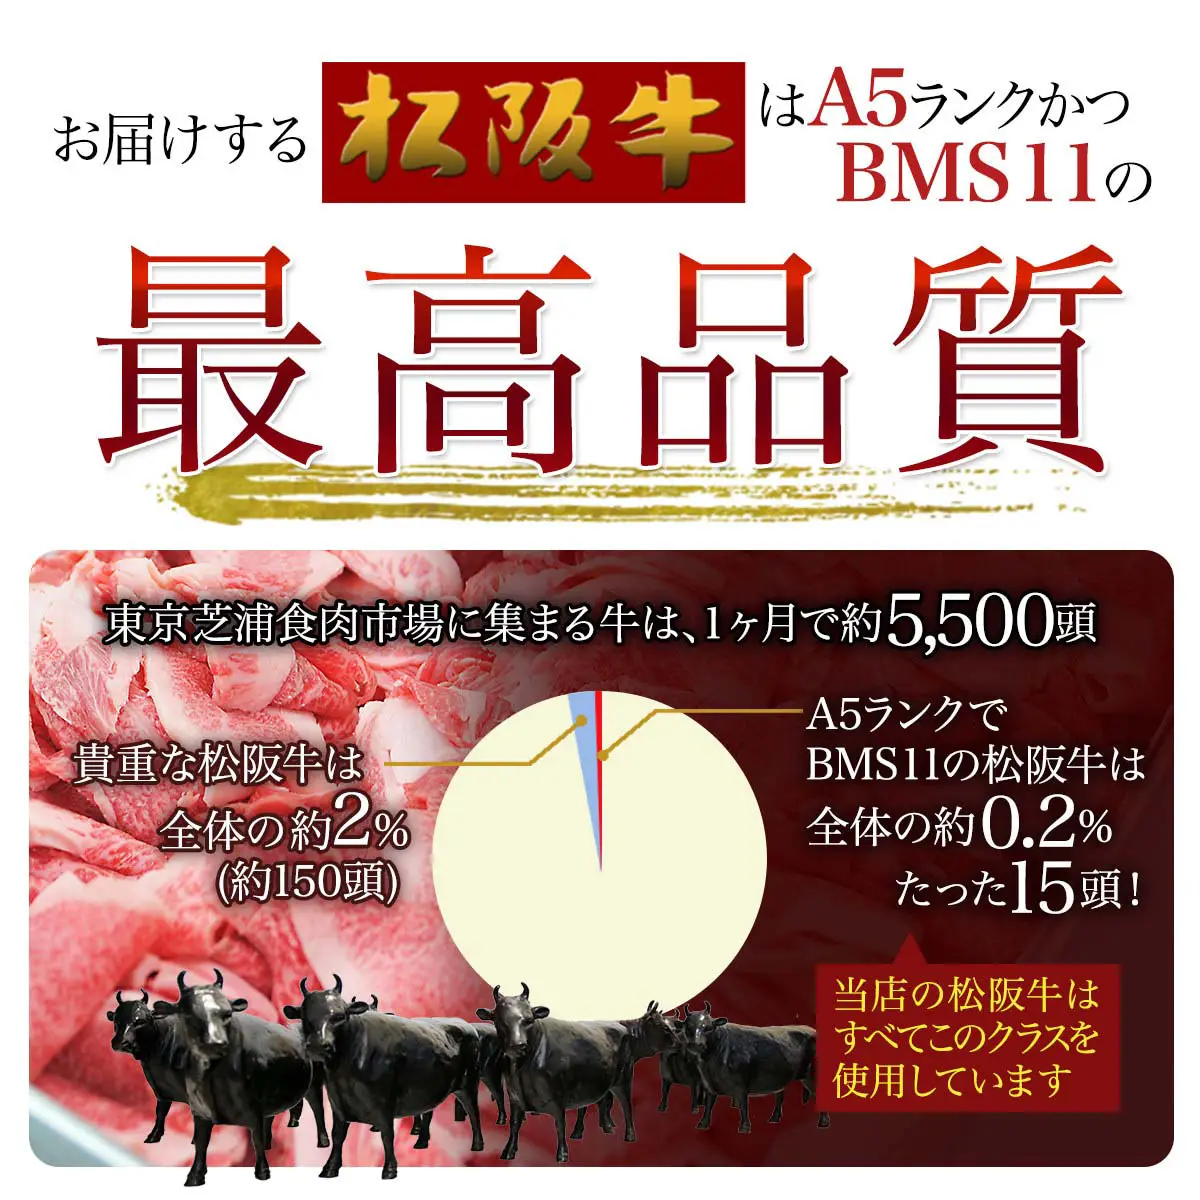 松阪牛 （松坂牛） お肉 の カタログ ギフト券 25000円 【送料無料】